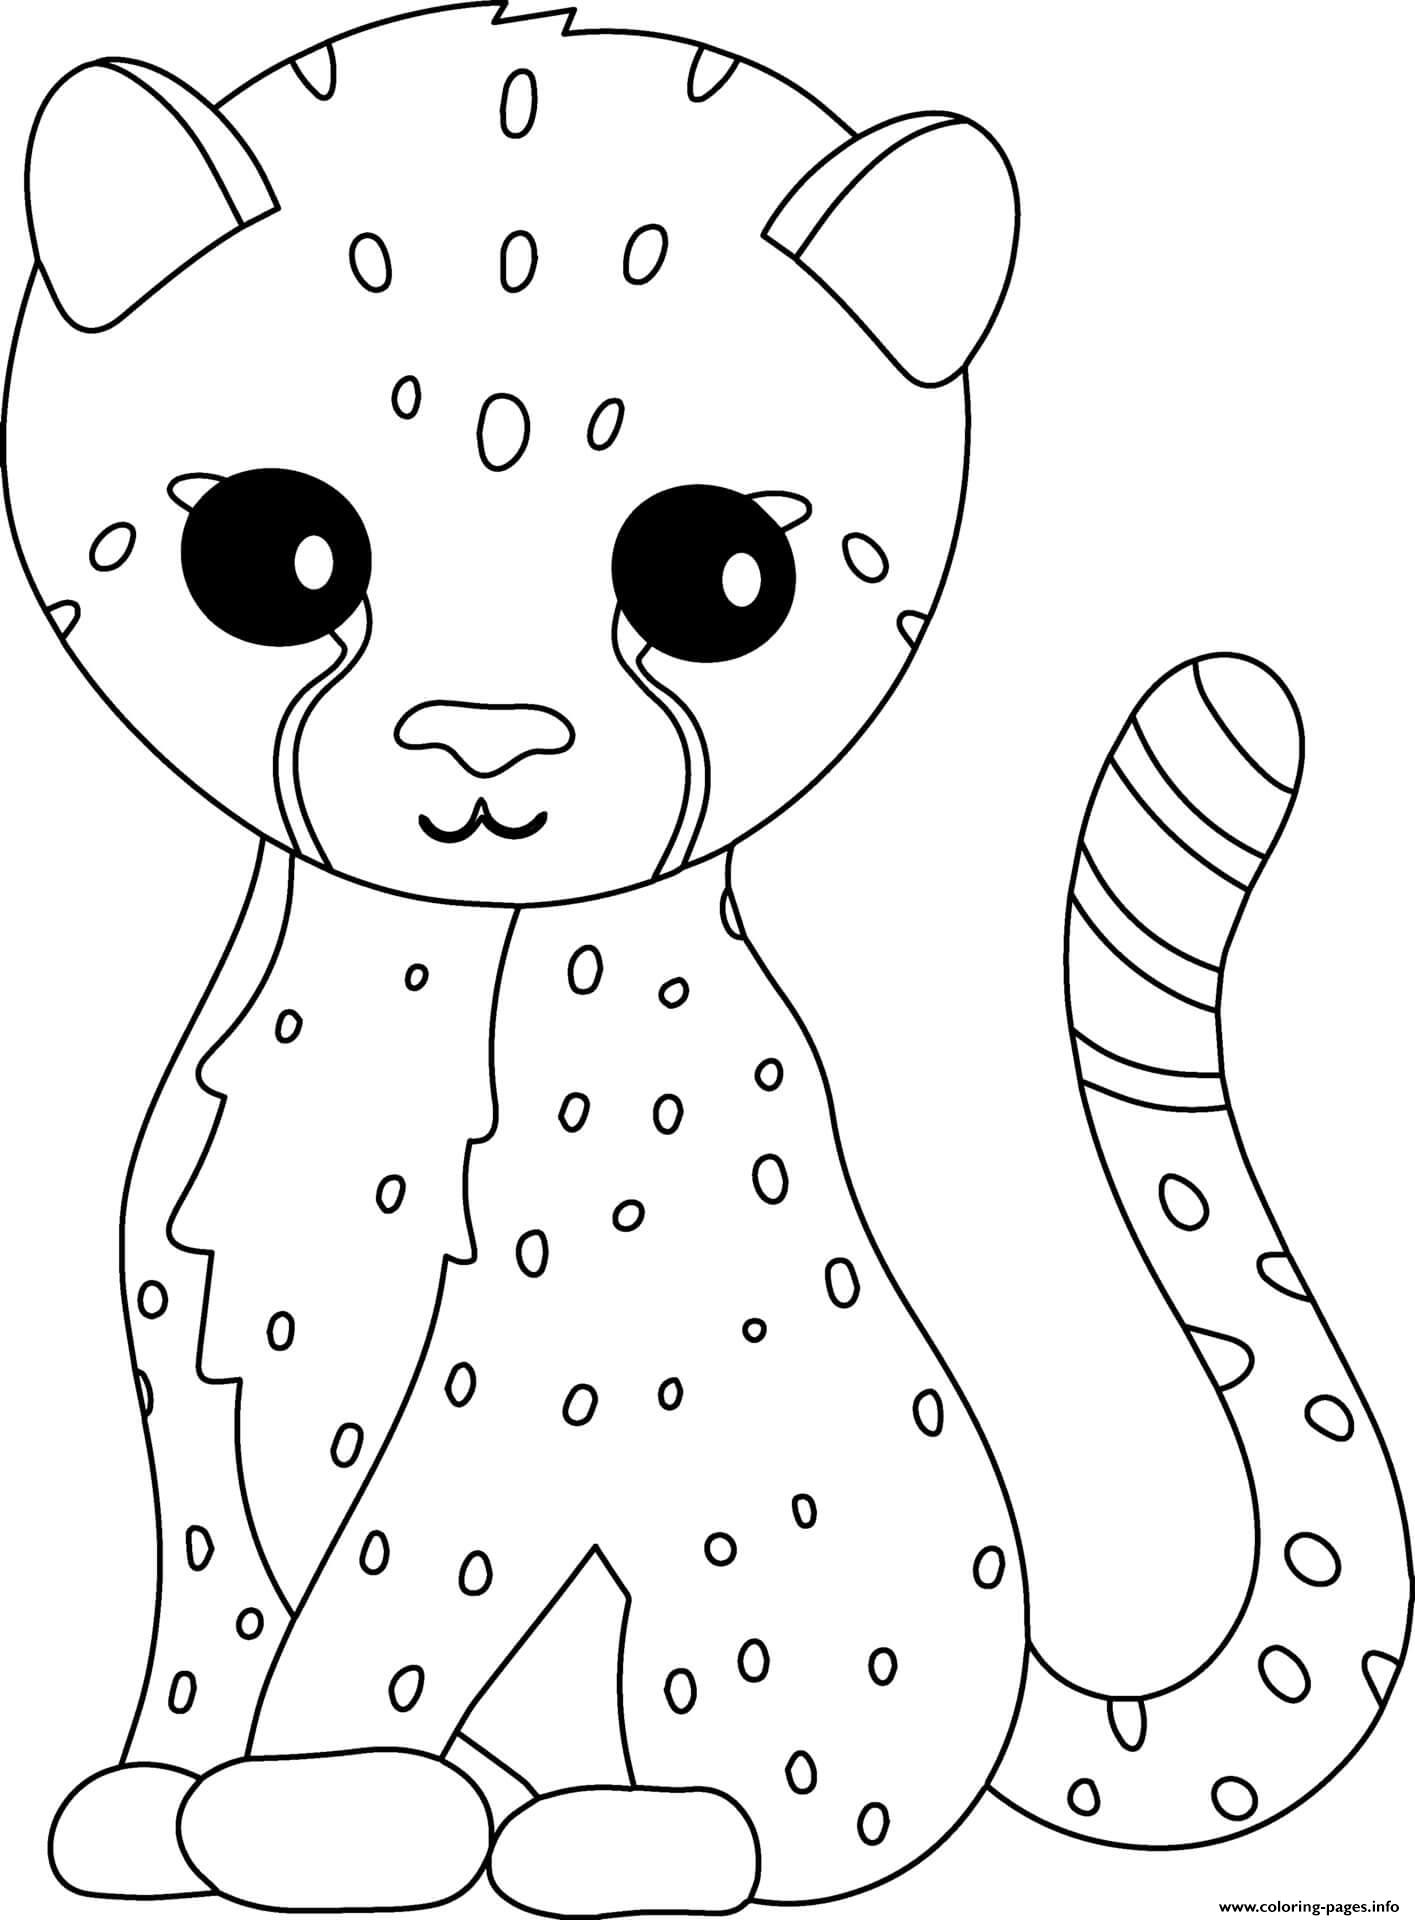 Cheetah coloring